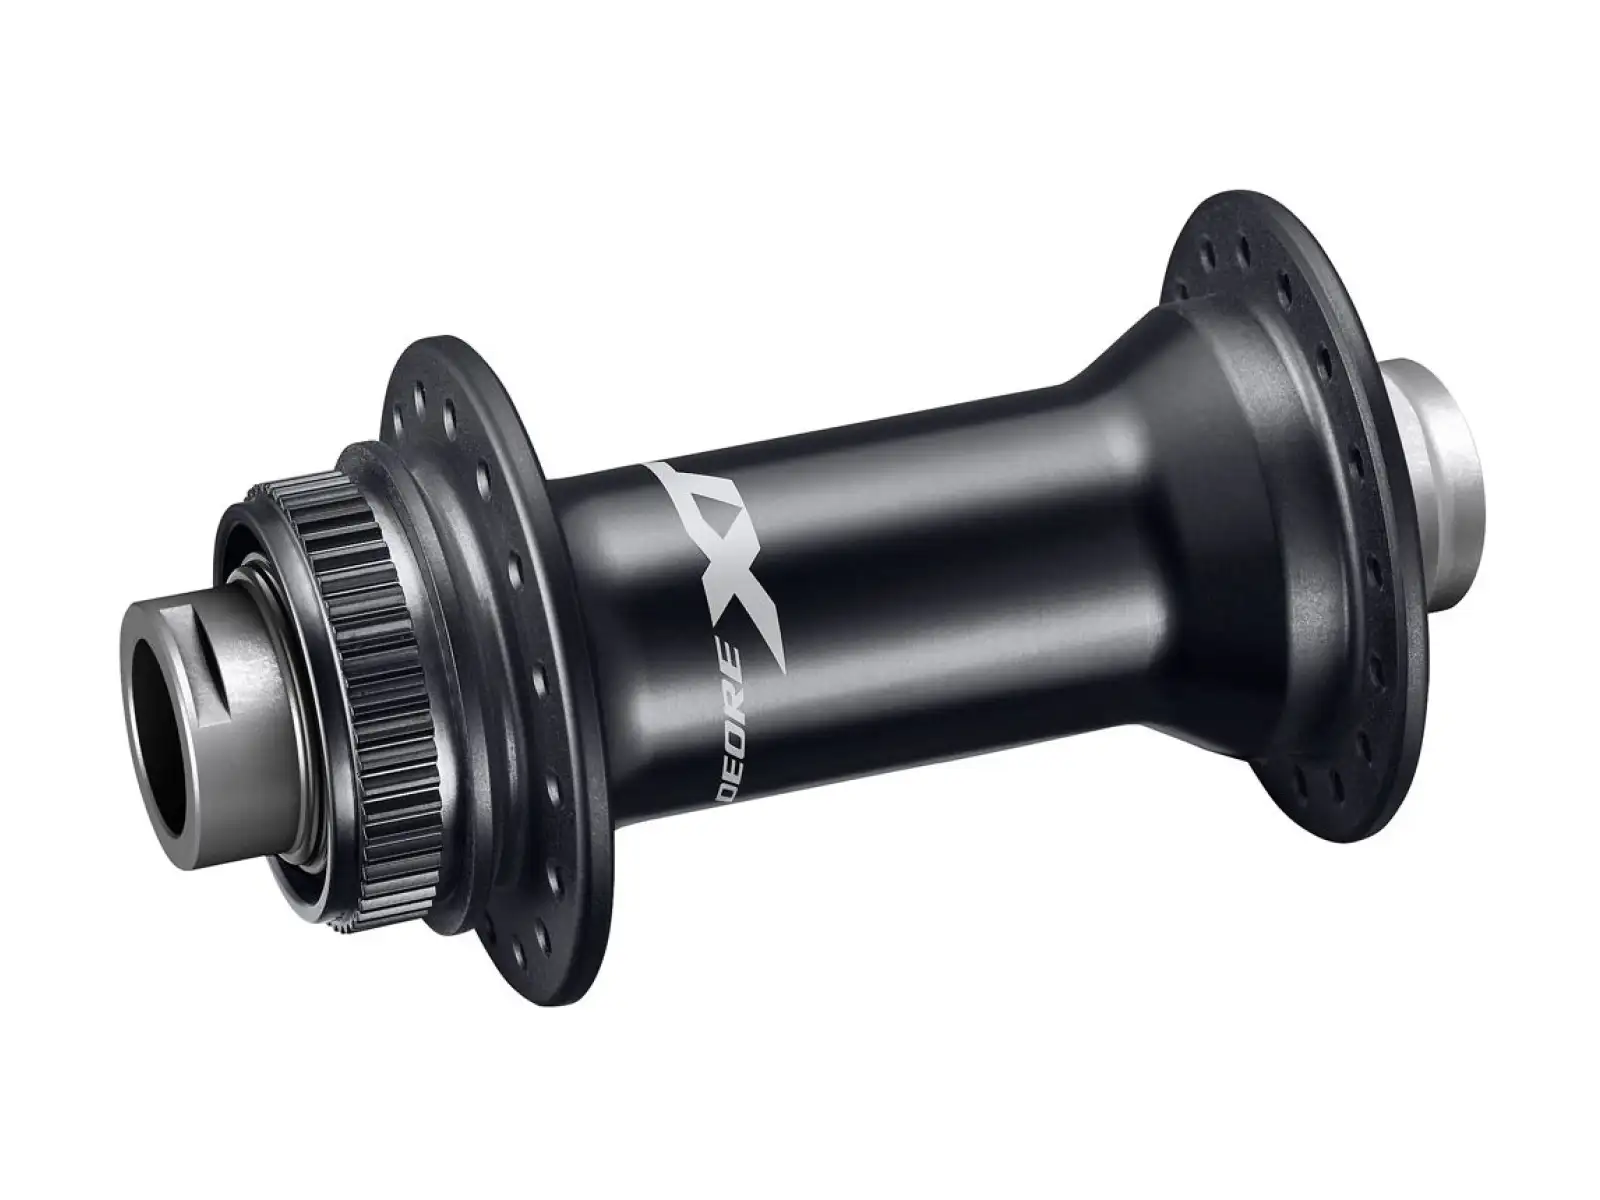 Shimano XT HB-M8110-B CL přední náboj 15x110 mm 28 děr